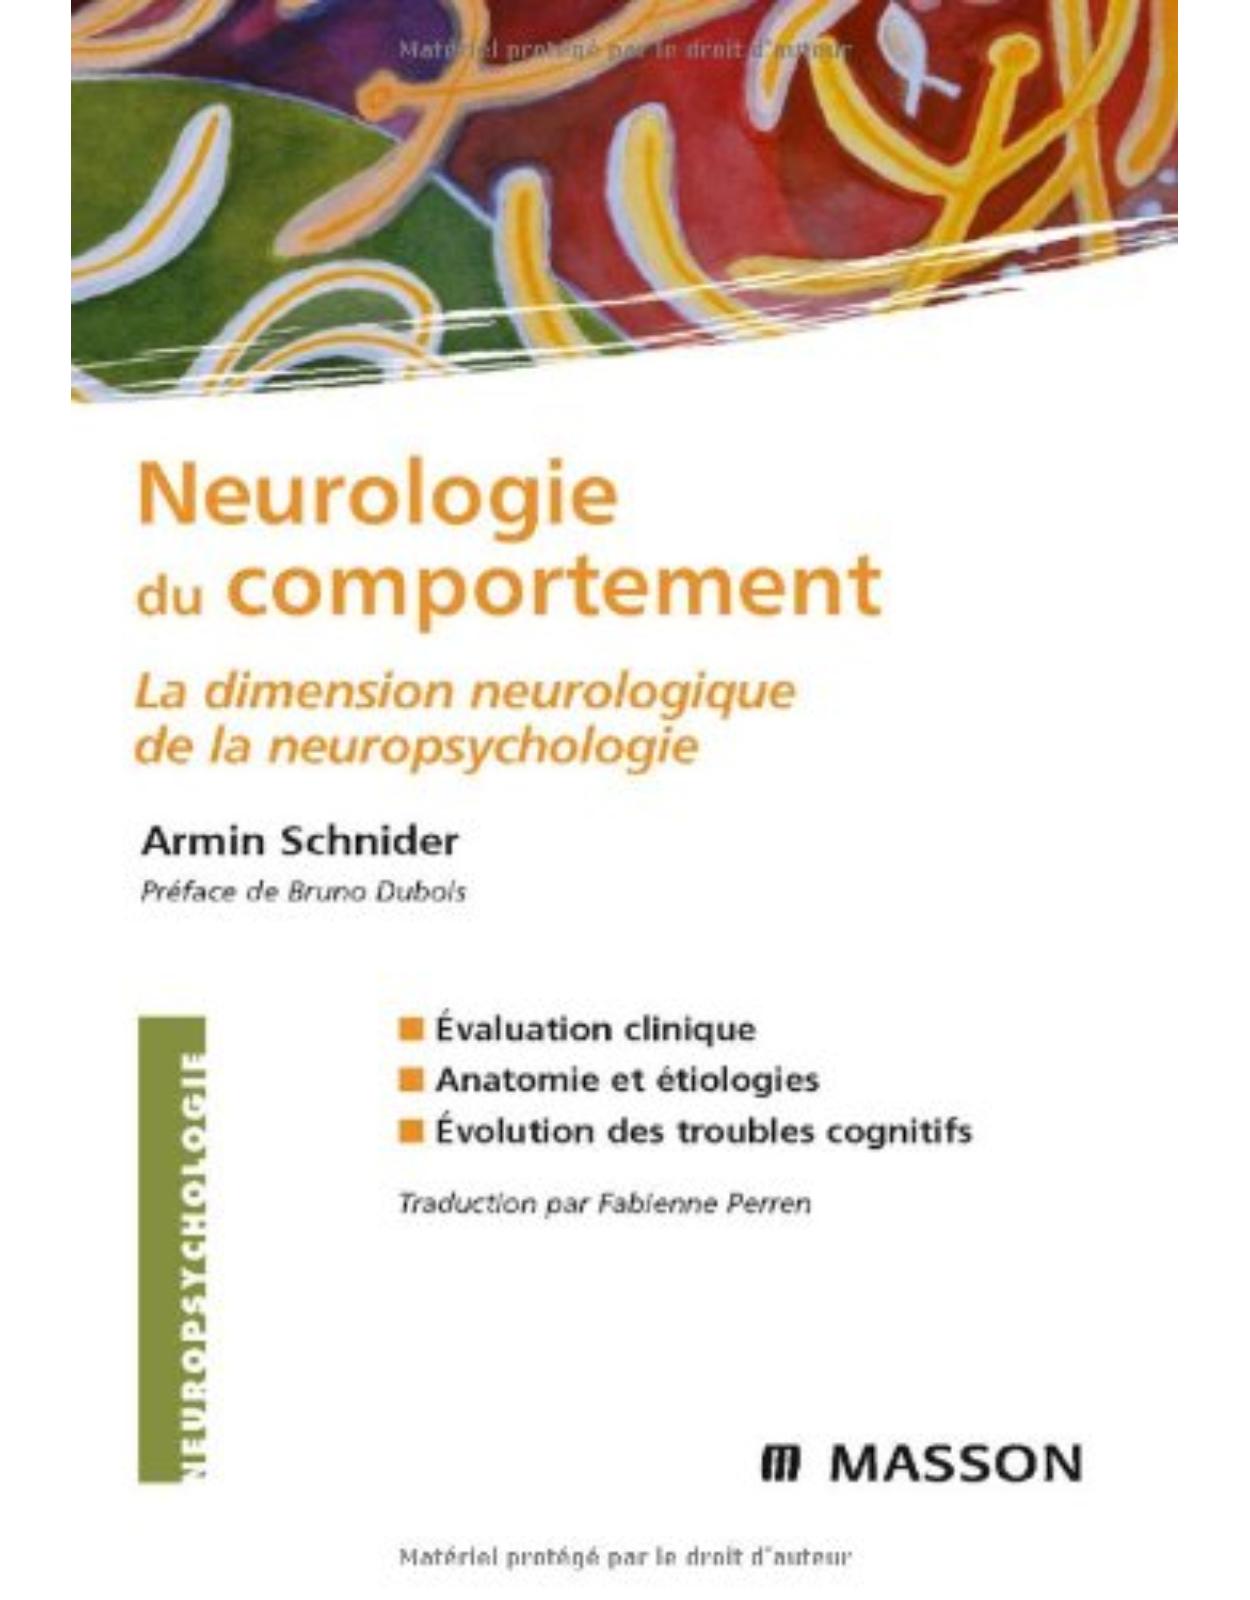 Neurologie du comportement : La dimension neurologique de la neuropsychologie